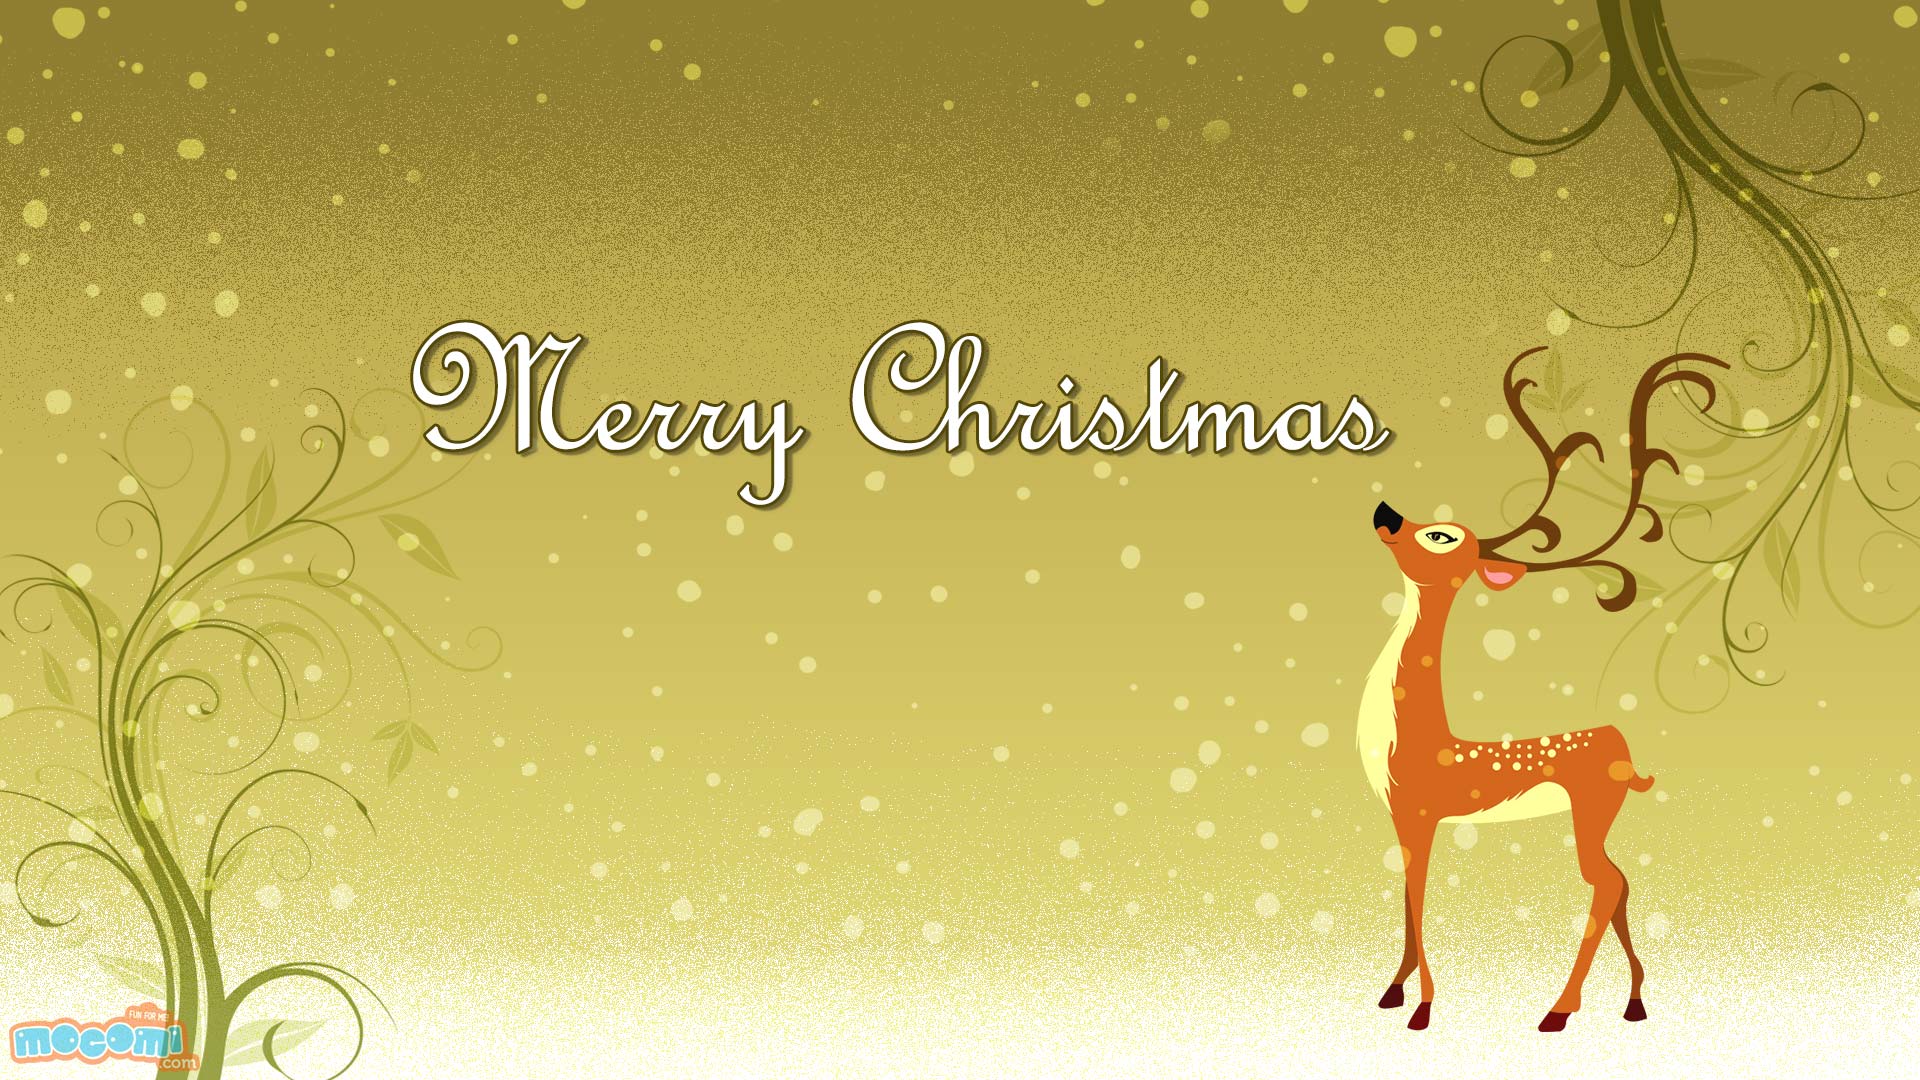 Merry Christmas- Reindeer